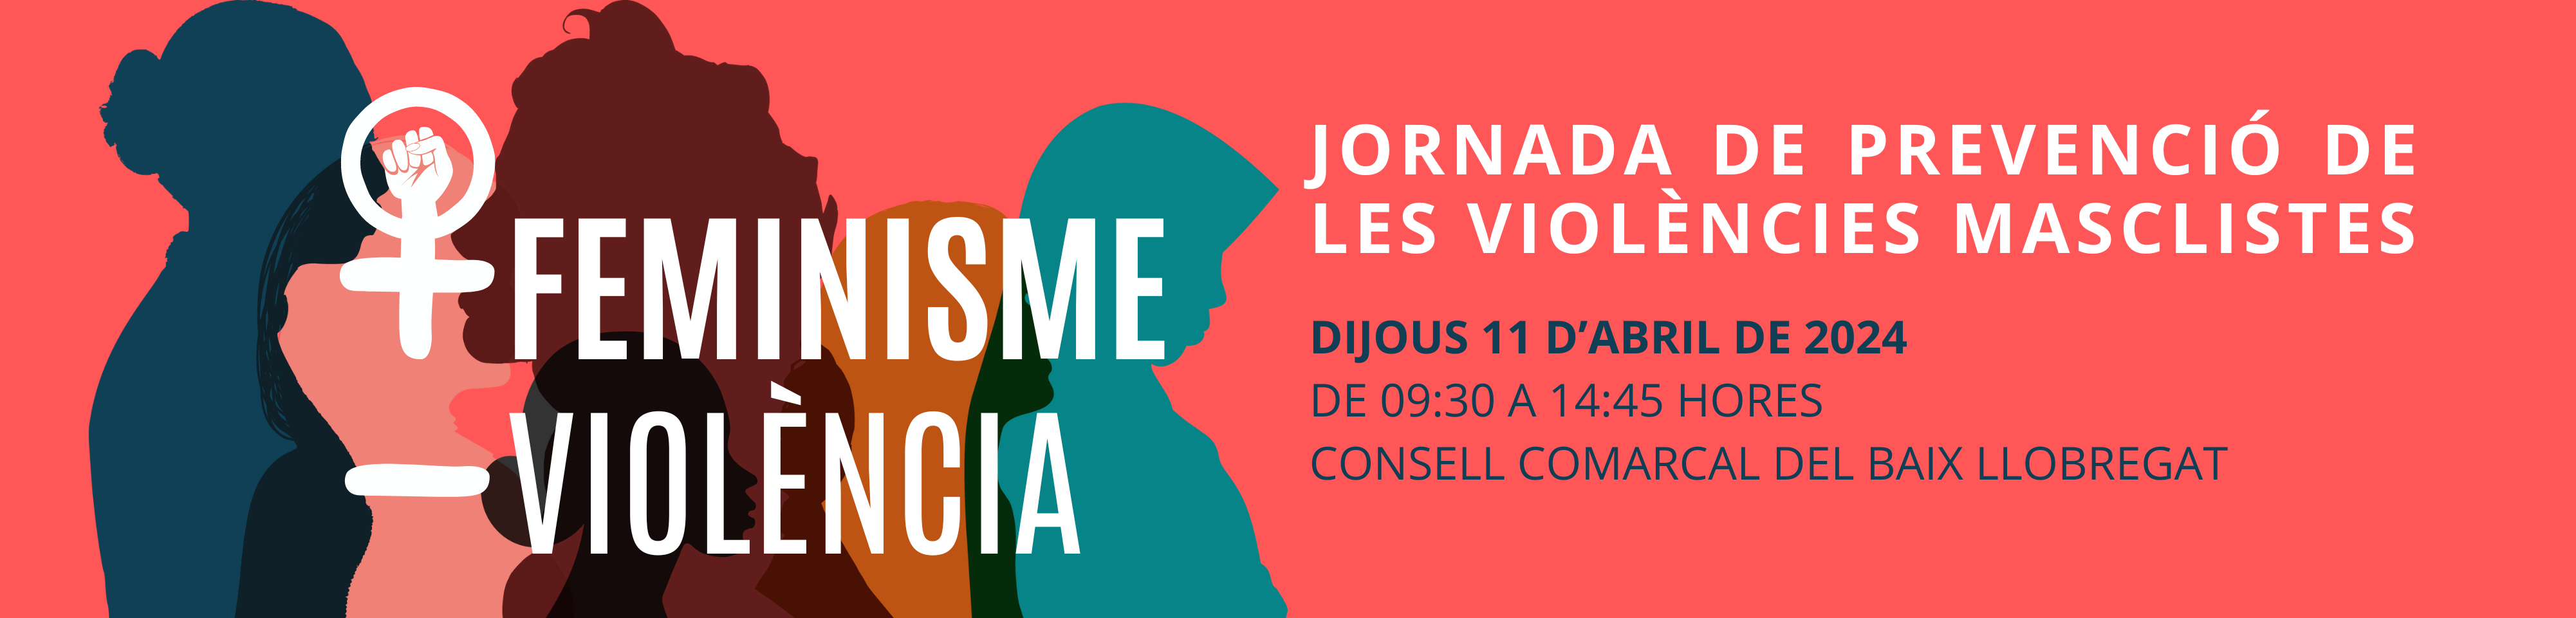 Participem en la Jornada "+ feminisme, - violència. Jornada de prevenció de violències masclistes" // Sant Feliu de Llobregat